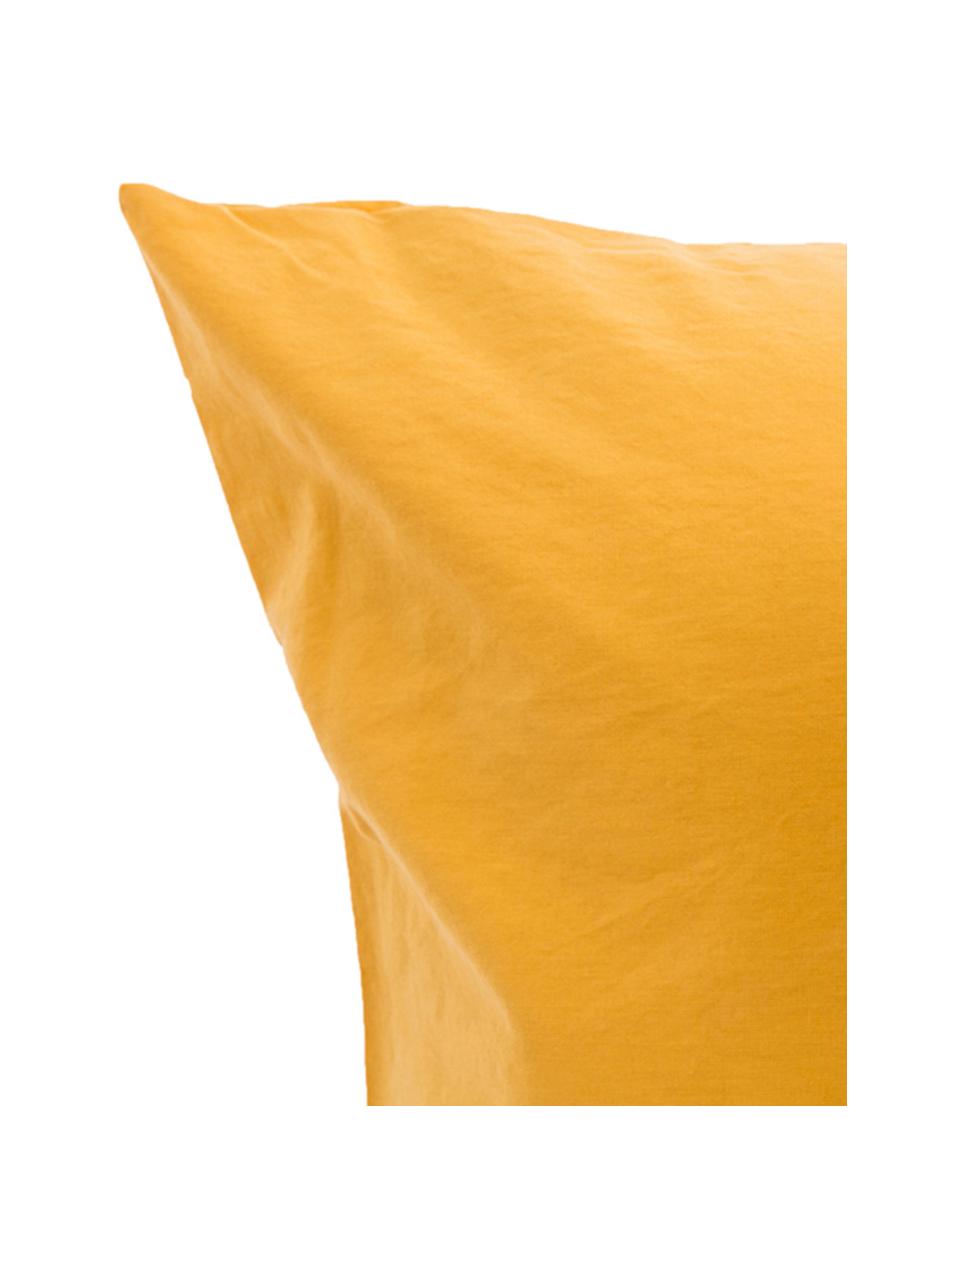 Parure copripiumino in cotone effetto stone washed Velle, Tessuto: cotone ranforce, Fronte e retro: giallo ocra, 155 x 200 cm + 1 federa 50 x 80 cm